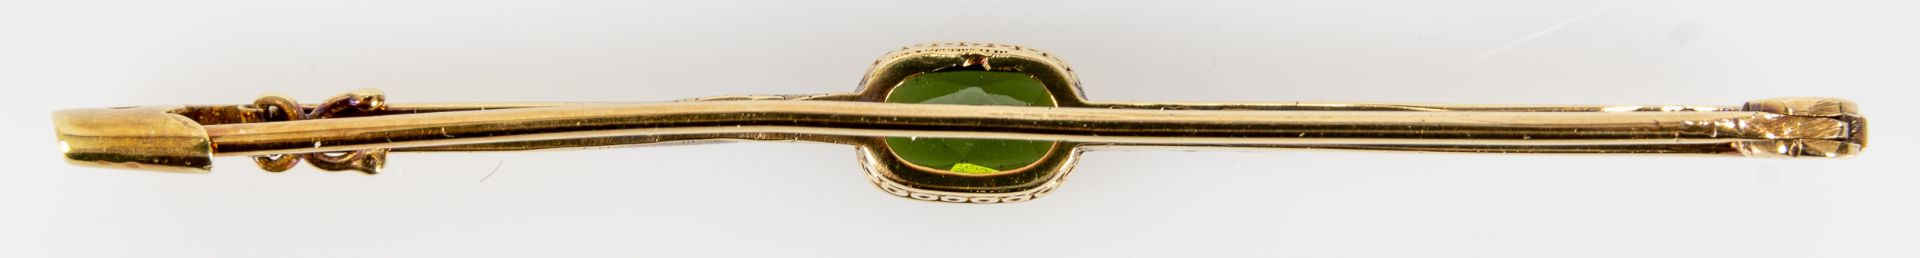 Feine 14 k Gelbgold Stabbrosche, mittig mit Turmalin besetzt, die Einfassung am oberen Abschluss mi - Image 4 of 4